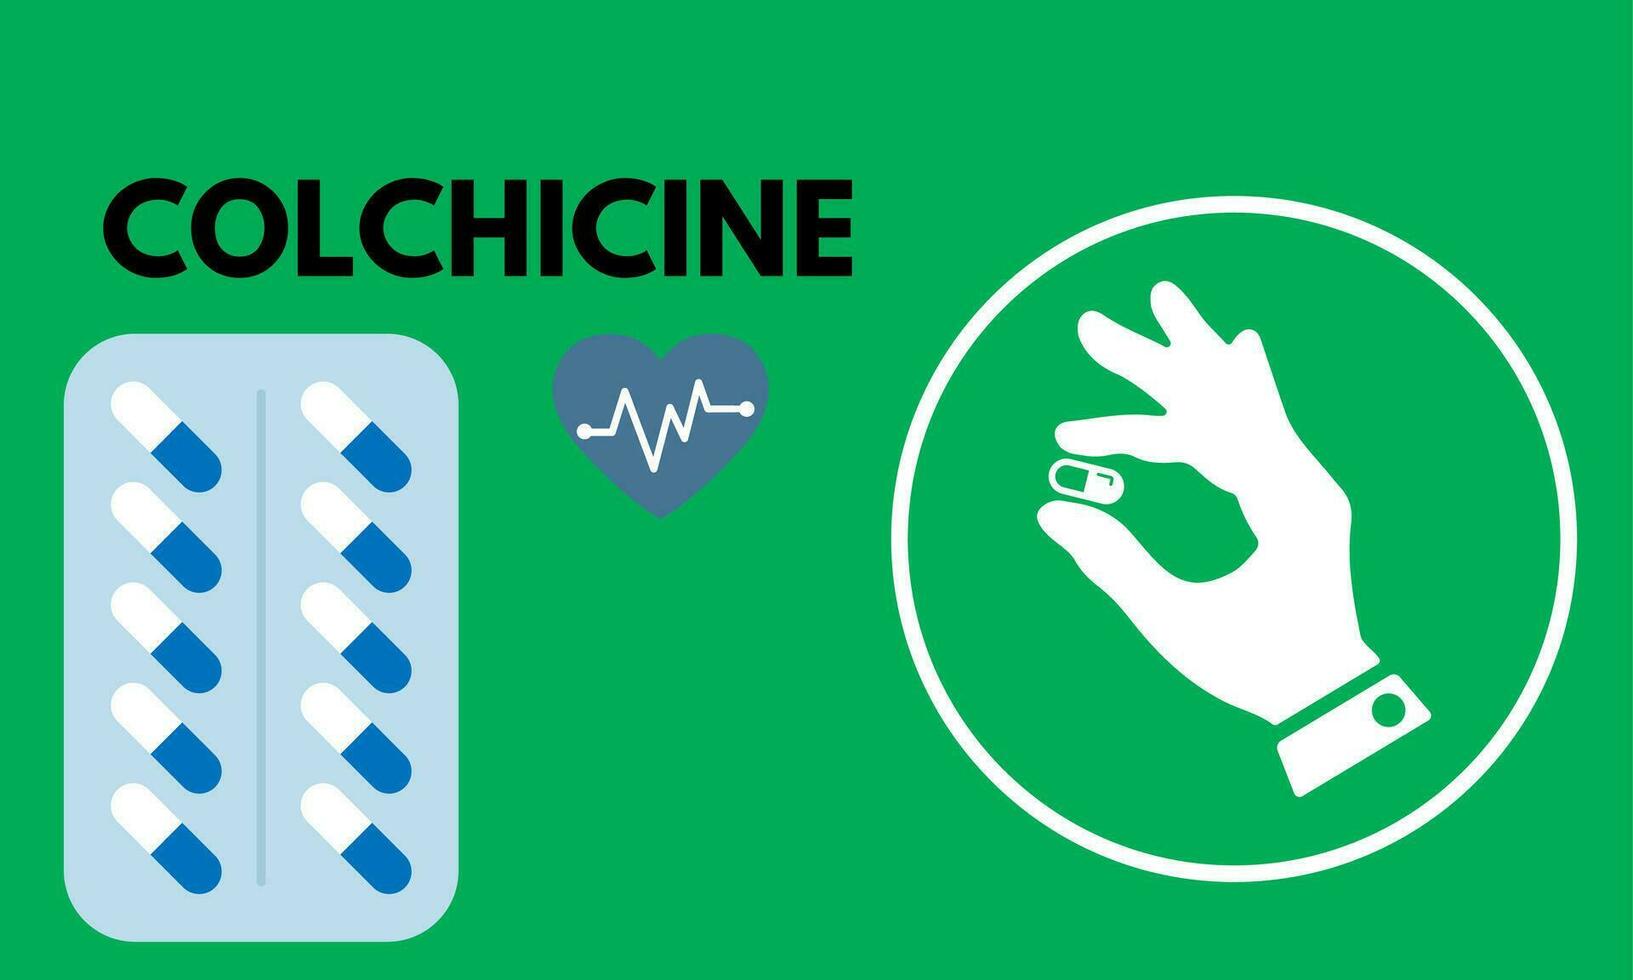 colchicine tablet dichtbij omhoog van geneesmiddel gebruikt naar traktatie jicht en behcet ziekte, pericarditis, familiaal middellandse Zee koorts. vector illustratie